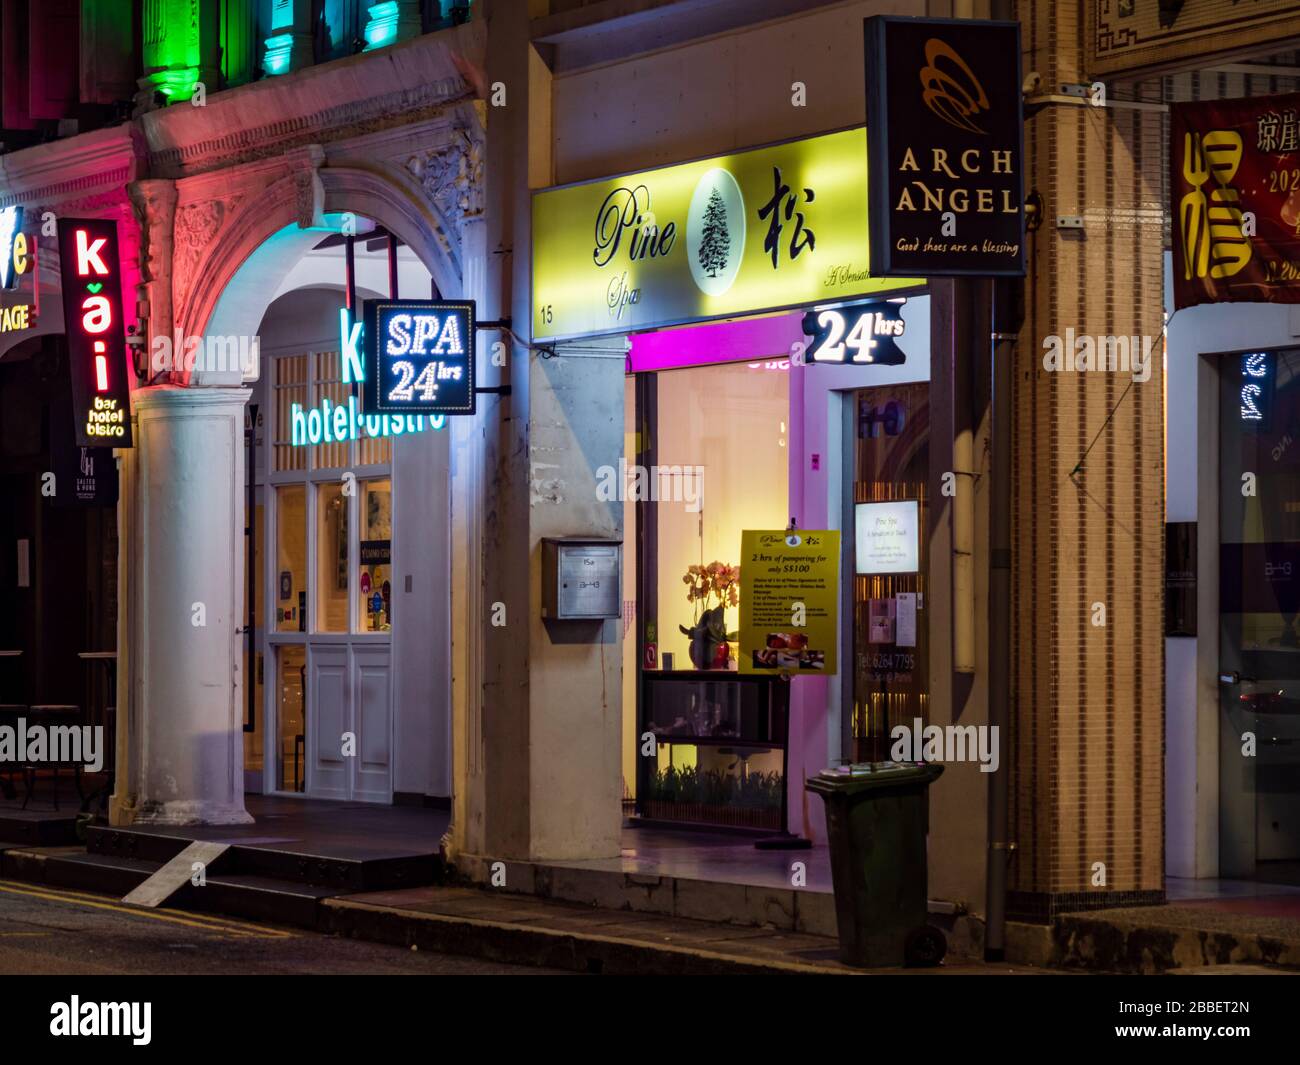 SINGAPUR - 12. März 2020 - Neon Beschilderung eines 24-Stunden-Massagebereichs/Massagesalon in der Seah Street, Singapur. Die chinesischen Wörter lesen "Pine Spa" Stockfoto